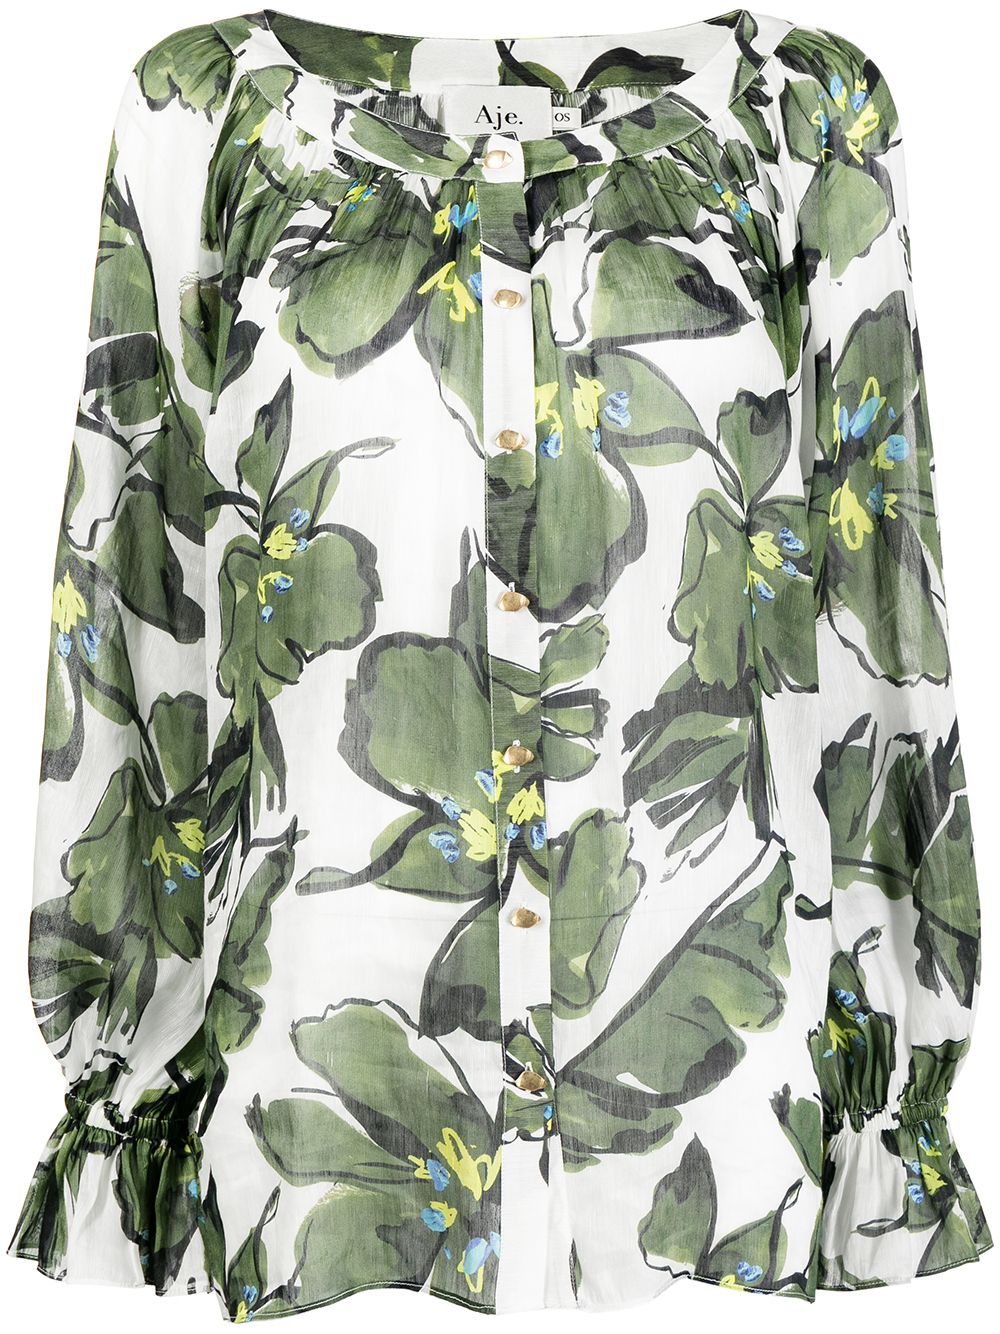 фото Aje блузка с цветочным принтом